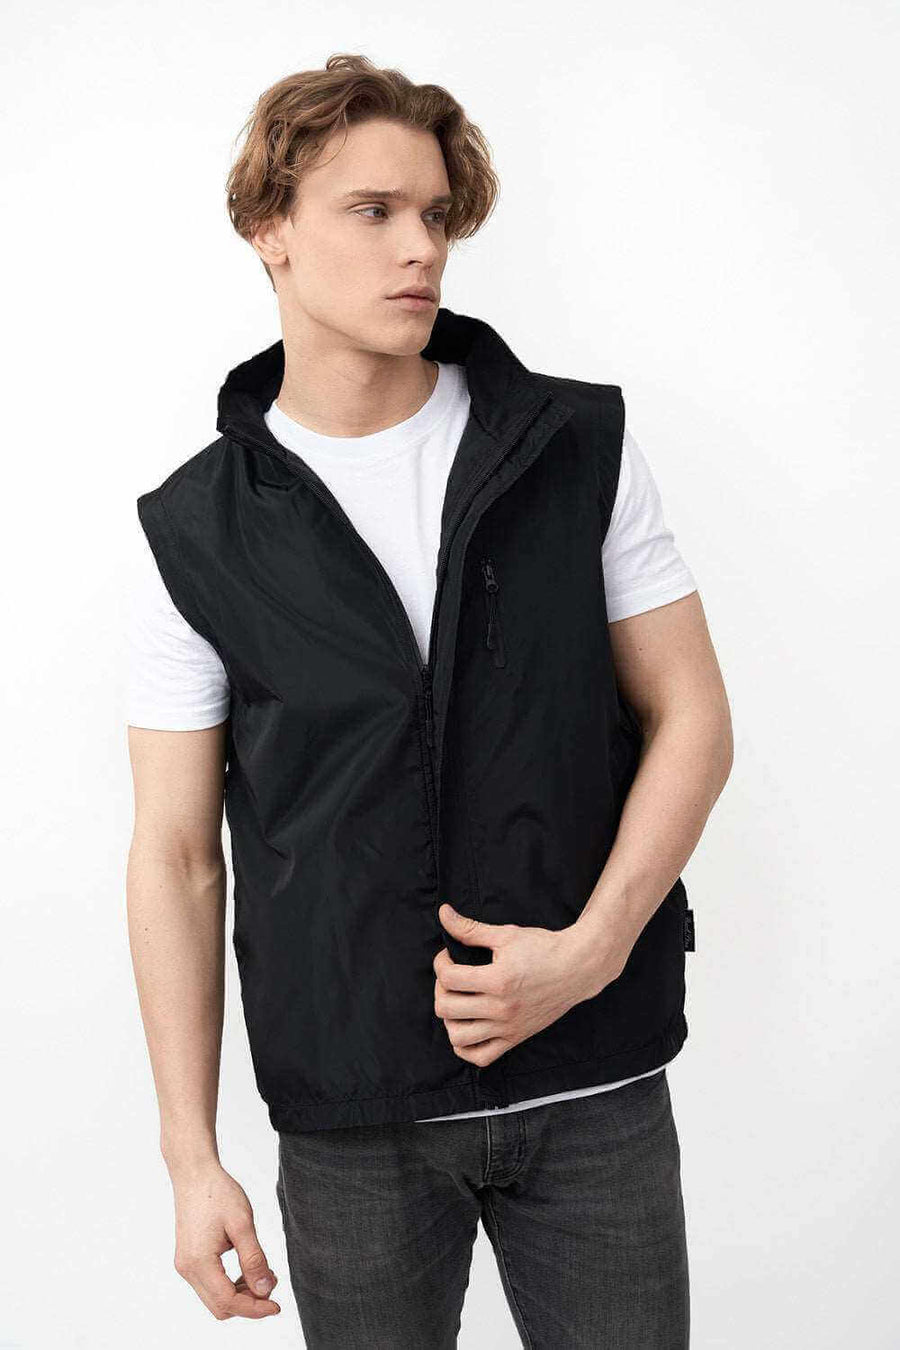 Half Open Zipper of Sleeveless Jacket Designed for Men